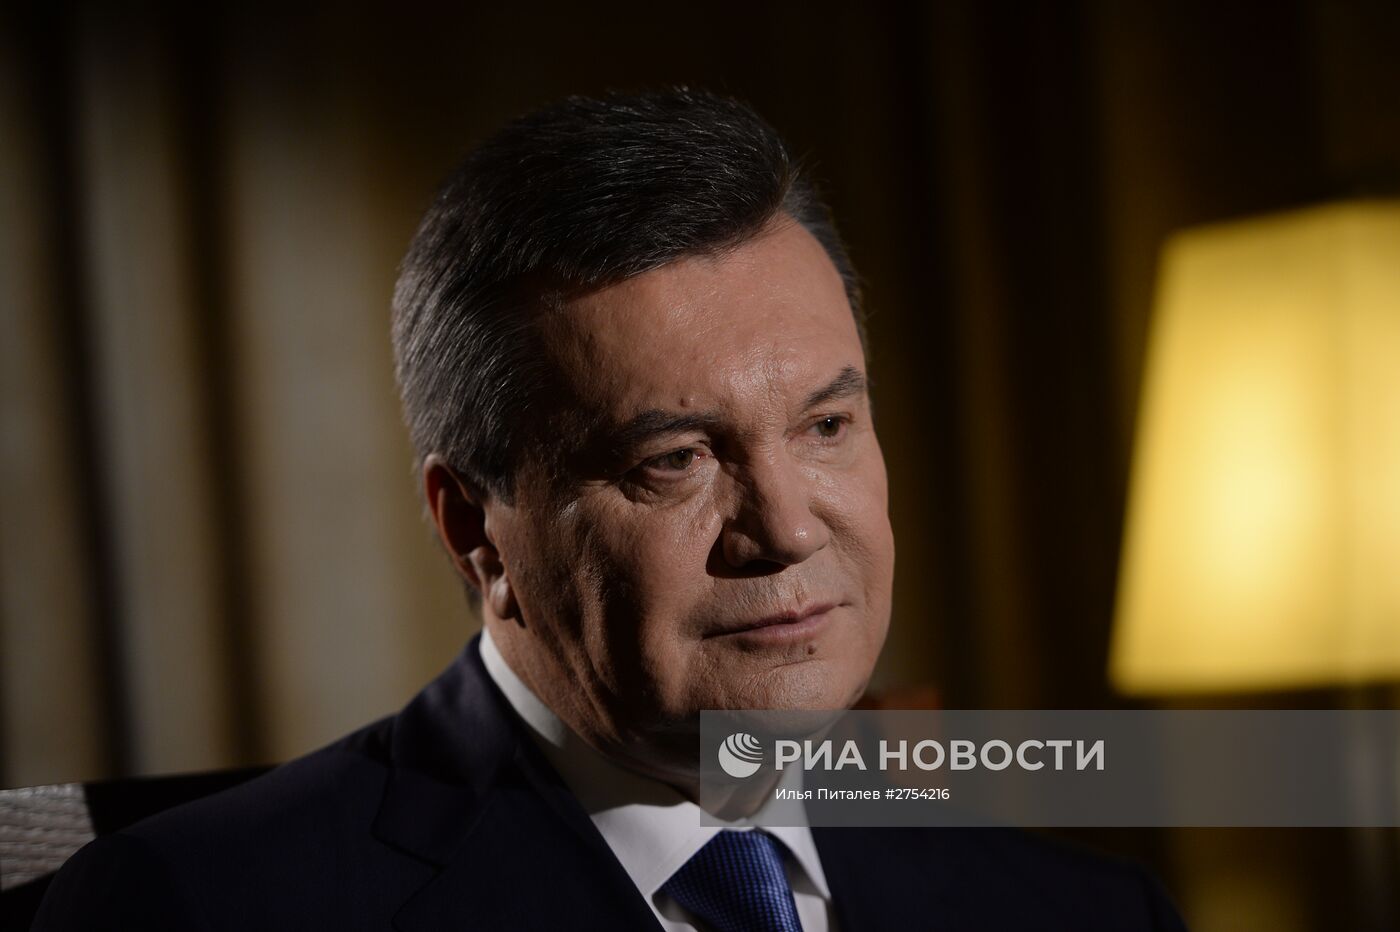 Бывший президент Украины Виктор Янукович дал интервью РИА Новости